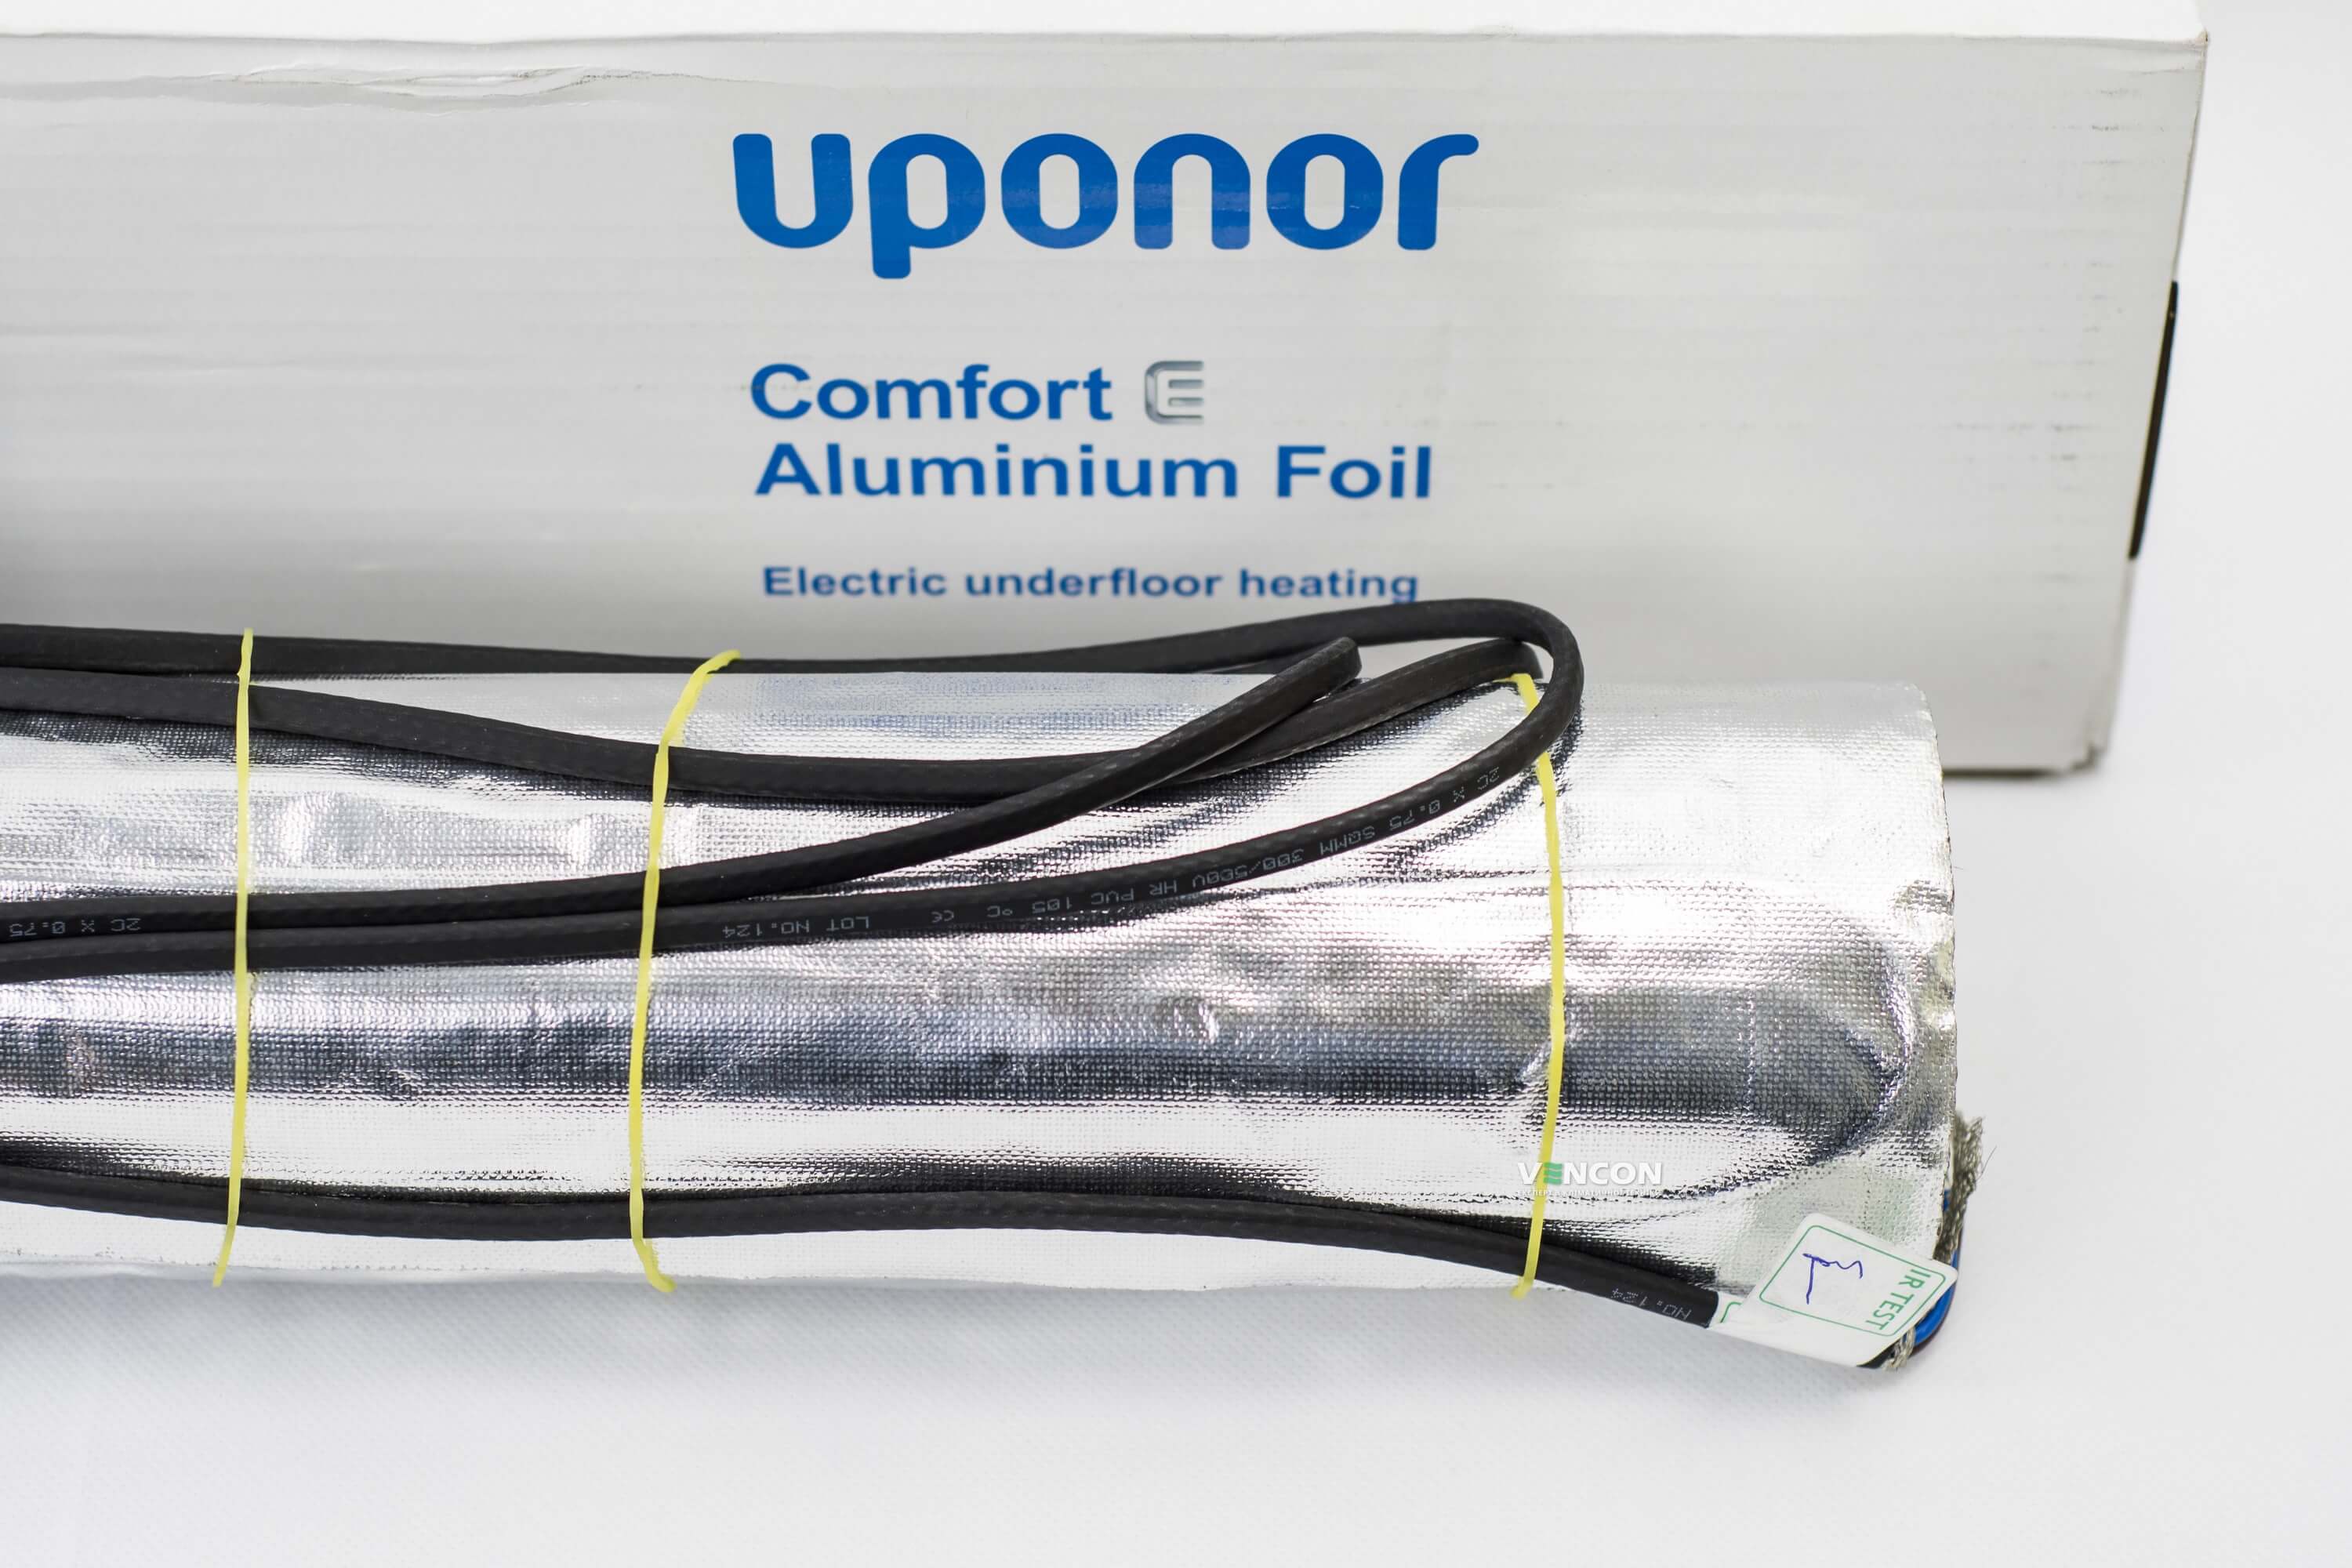 Электрический теплый пол Uponor Aluminium Foil 140-8 отзывы - изображения 5